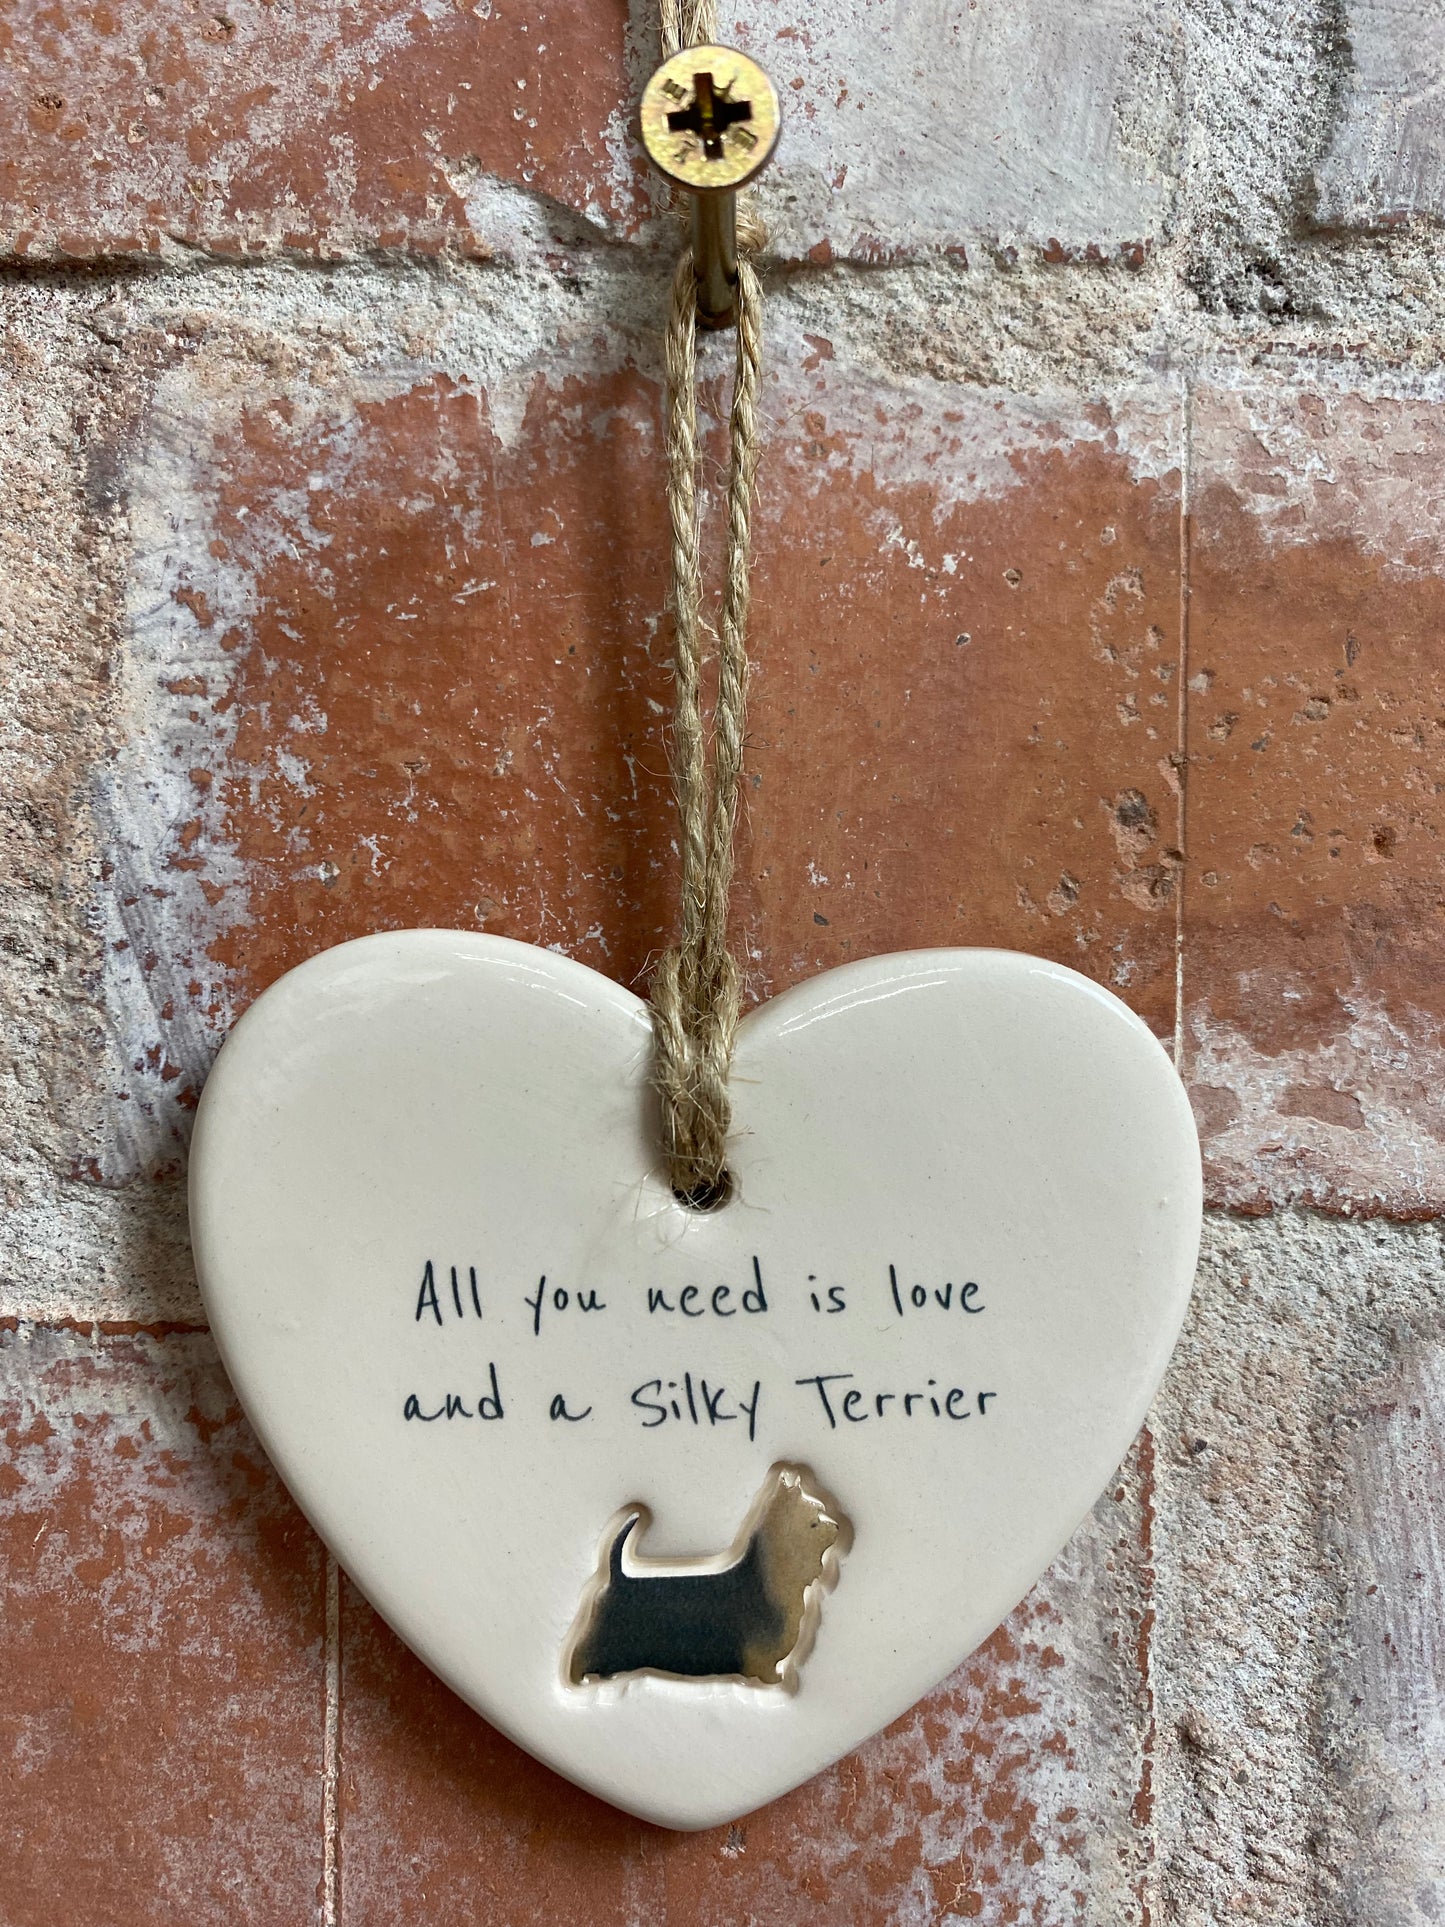 Silky Terrier ceramic heart